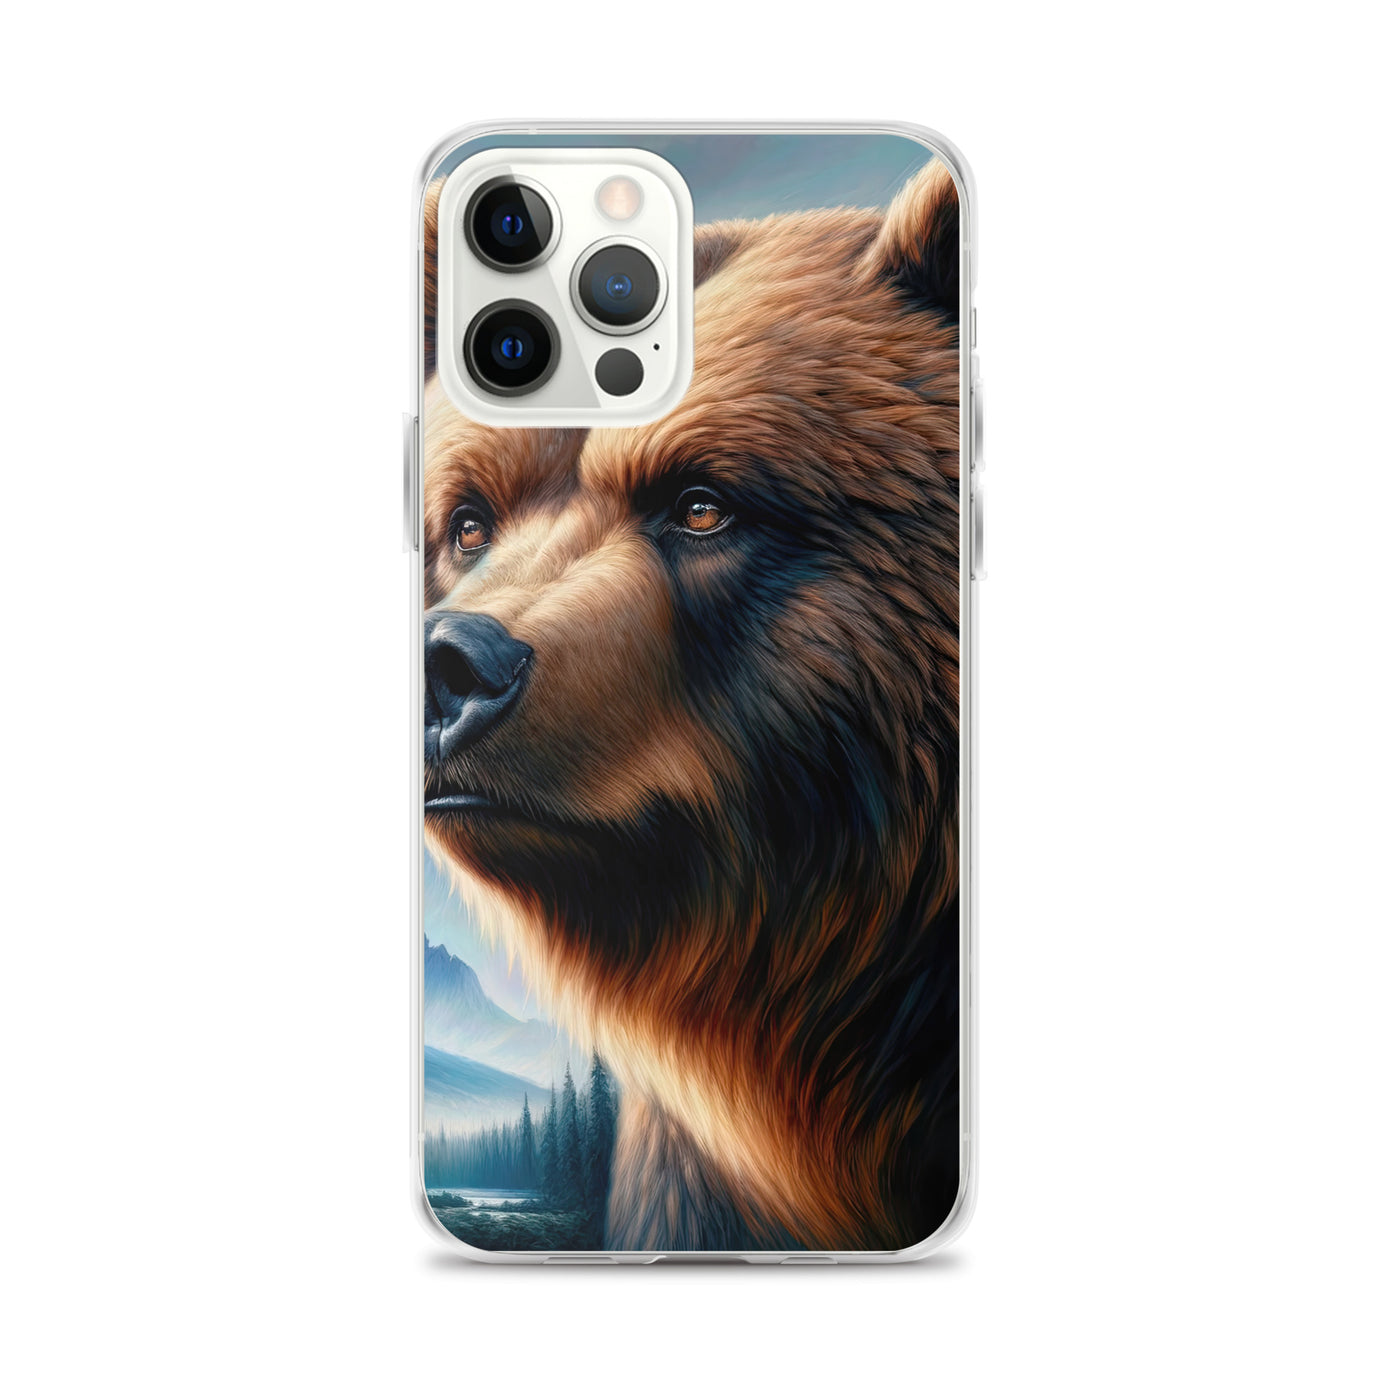 Ölgemälde, das das Gesicht eines starken realistischen Bären einfängt. Porträt - iPhone Schutzhülle (durchsichtig) camping xxx yyy zzz iPhone 12 Pro Max